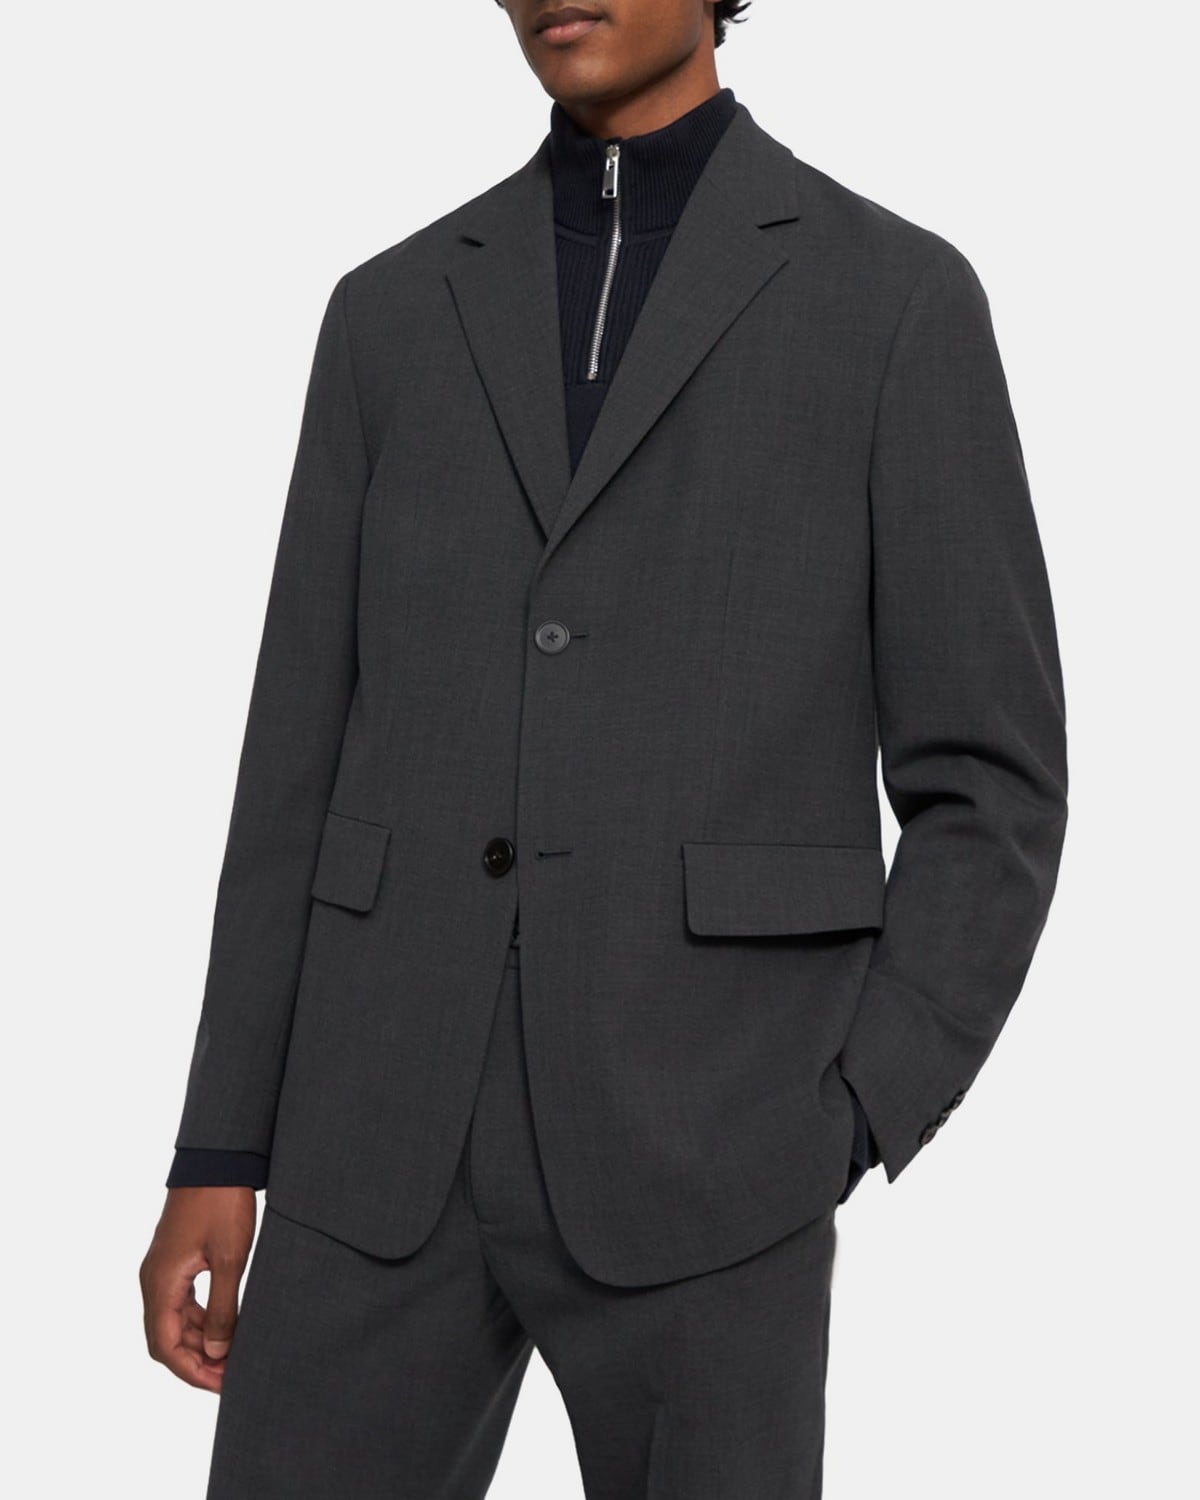 띠어리 맨 셋업 재킷 Theory Tailored Blazer in Bond Wool Twill,PESTLE MELANGE